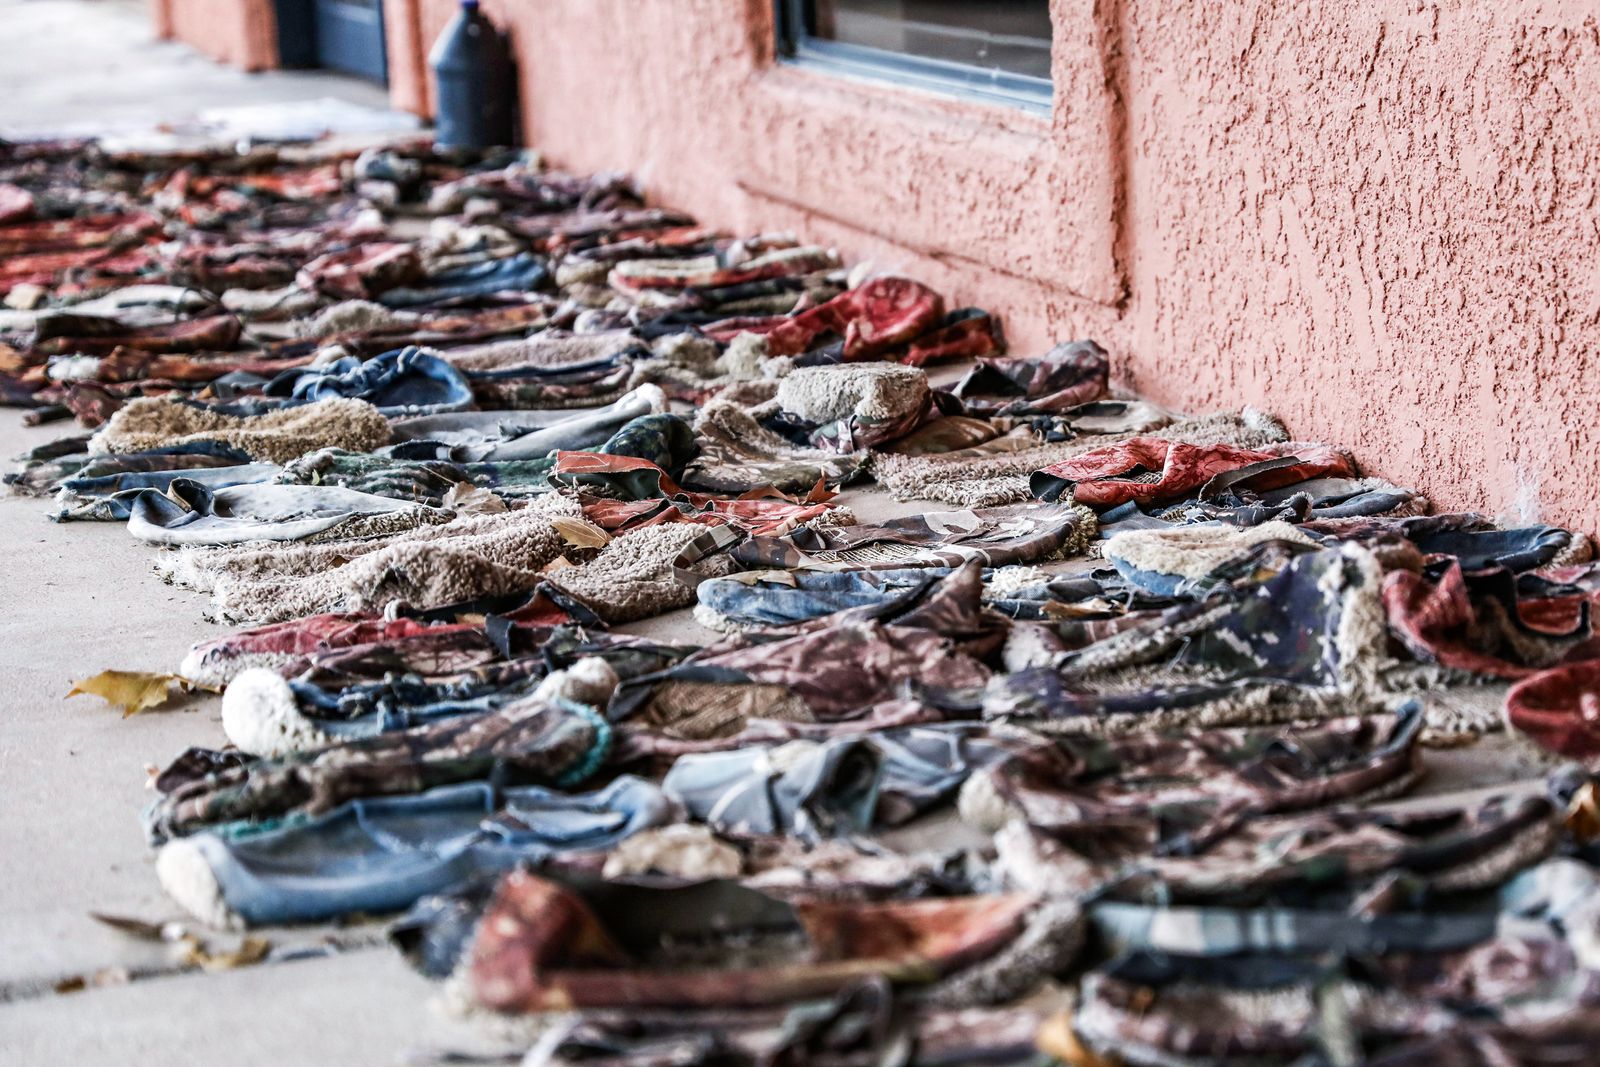 Những đôi giày thảm mà những người nhập cư bất hợp pháp buộc vào đế giày để che giấu dấu vết, tại trang trại gia súc của ông Jim Chilton ở Arivaca, Arizona, vào ngày 07/12/2018. (Ảnh: Charlotte Cuthbertson/The Epoch Times)